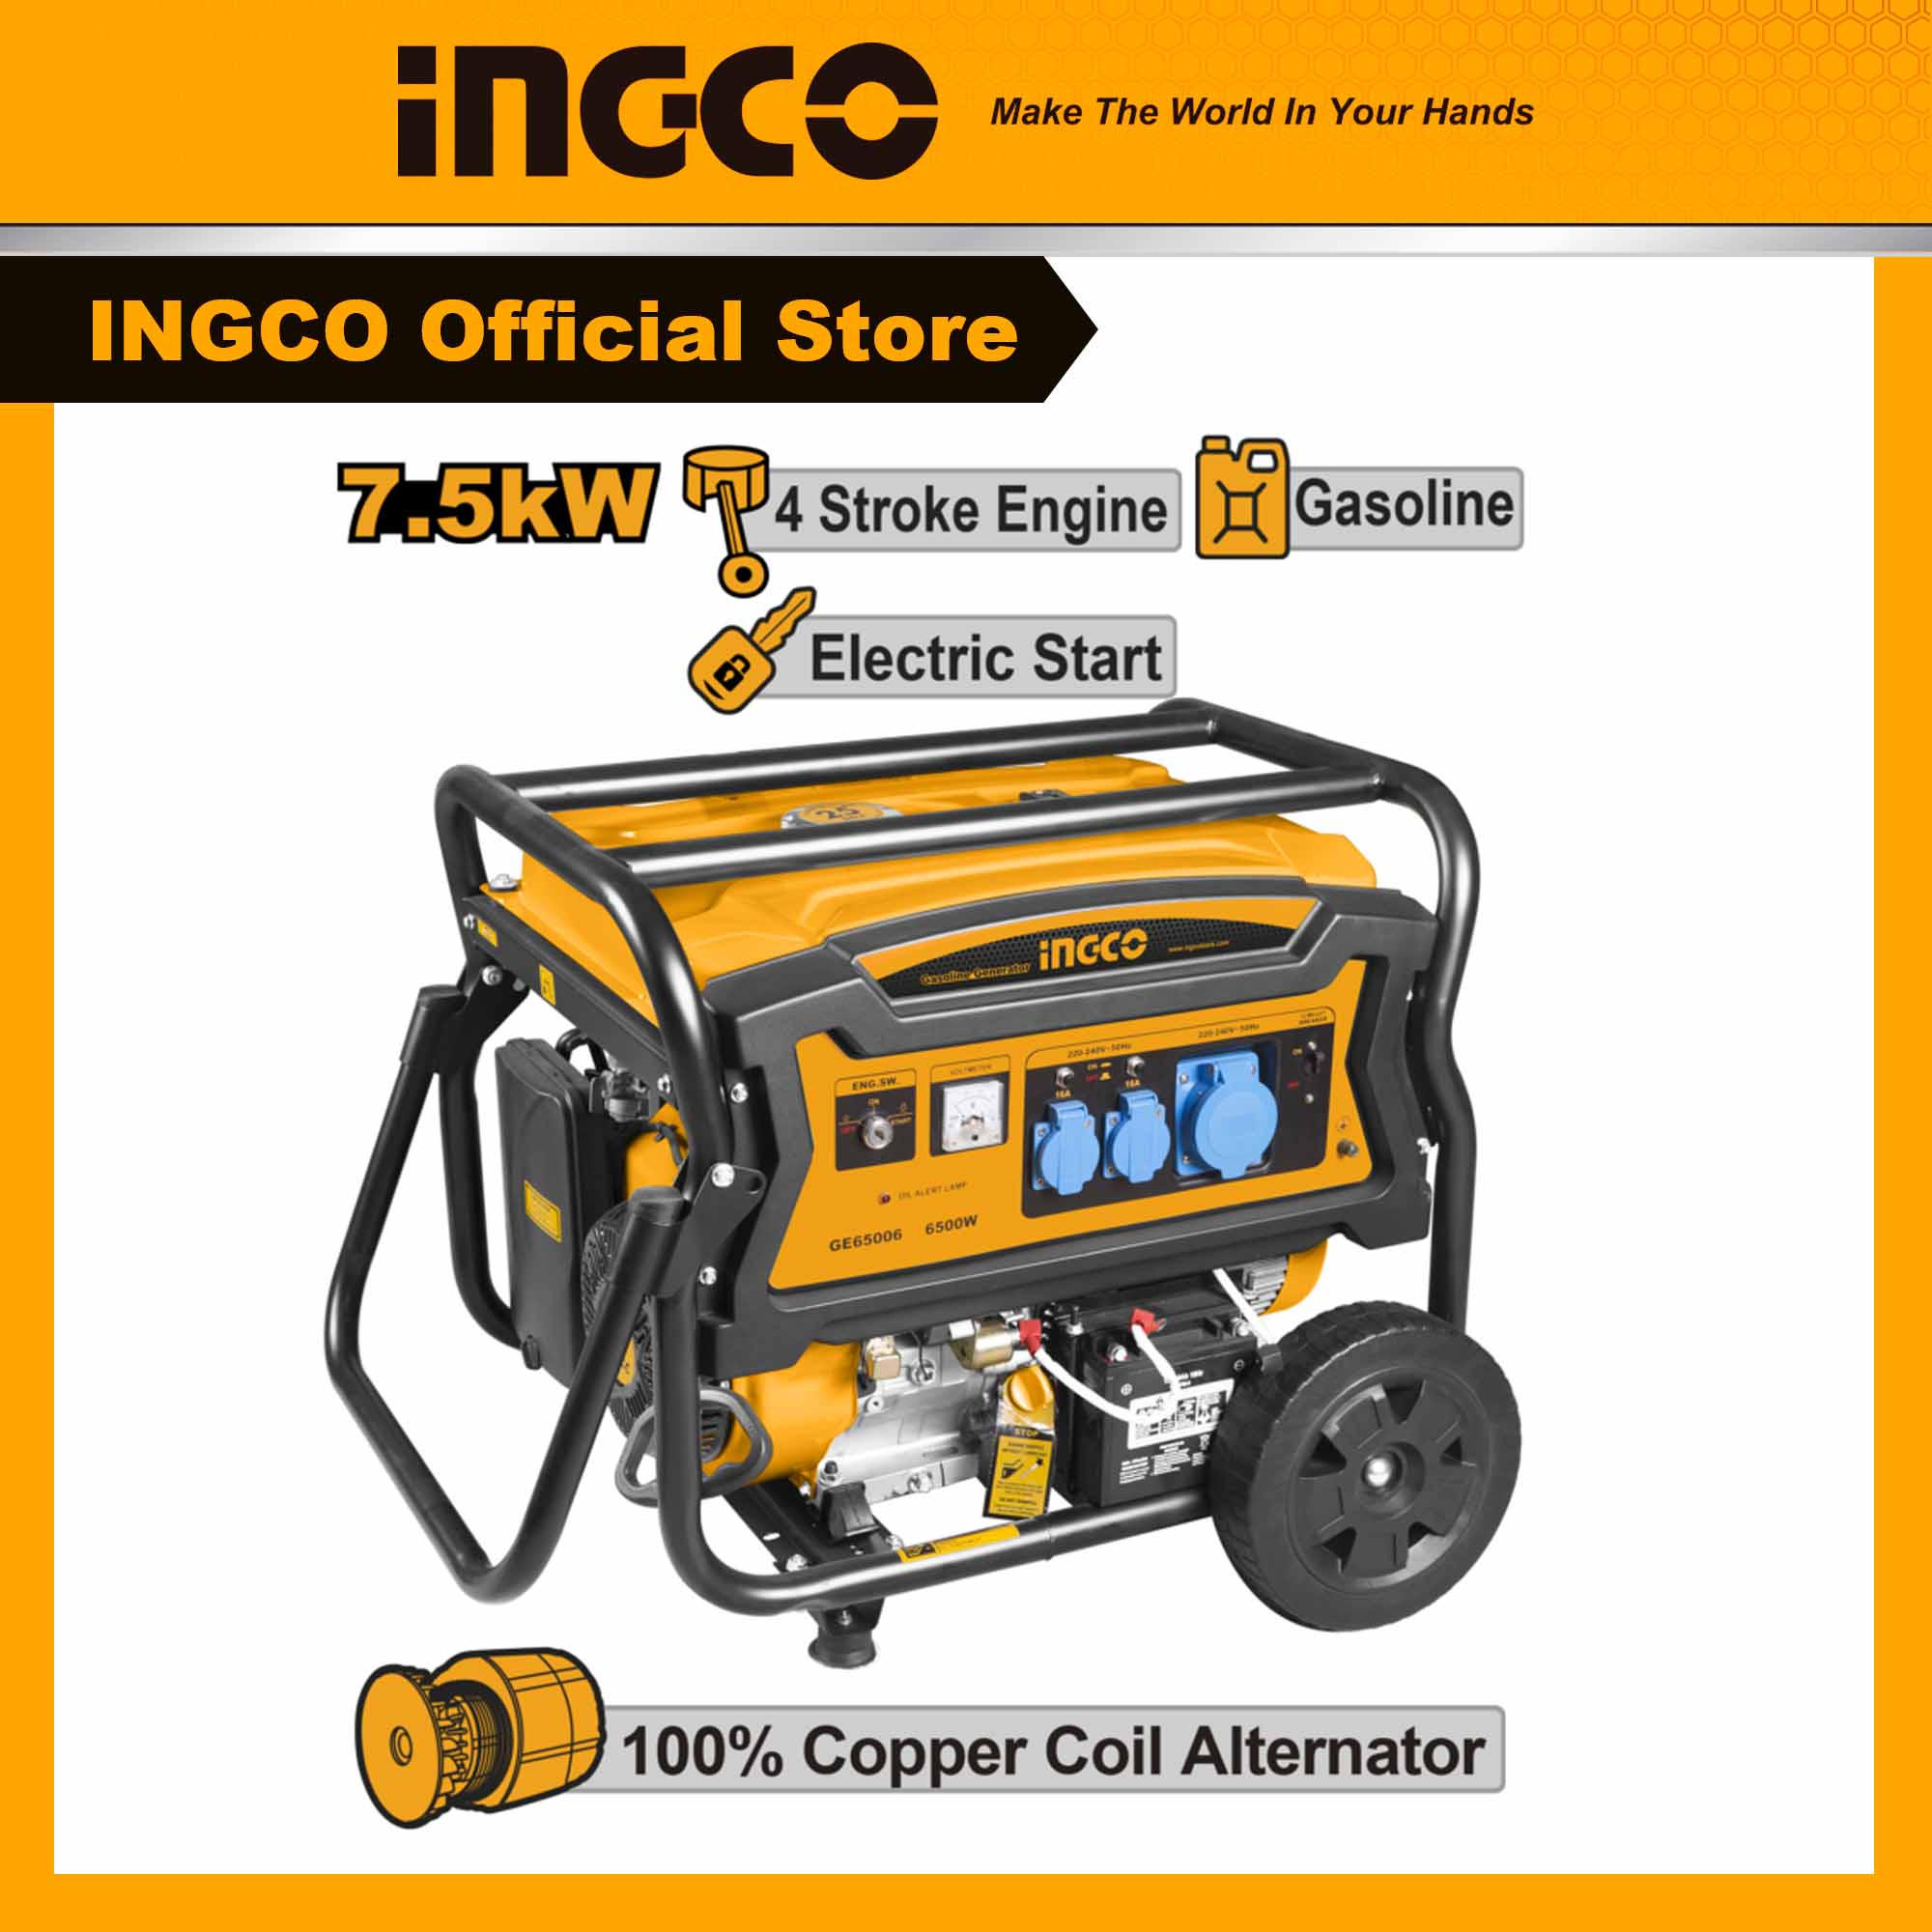 máy phát điện 7.5kw INGCO GE75006 dây đồng 100% dùng cho gia đình, công ty loại đề điện và giật nổ chạy xăng